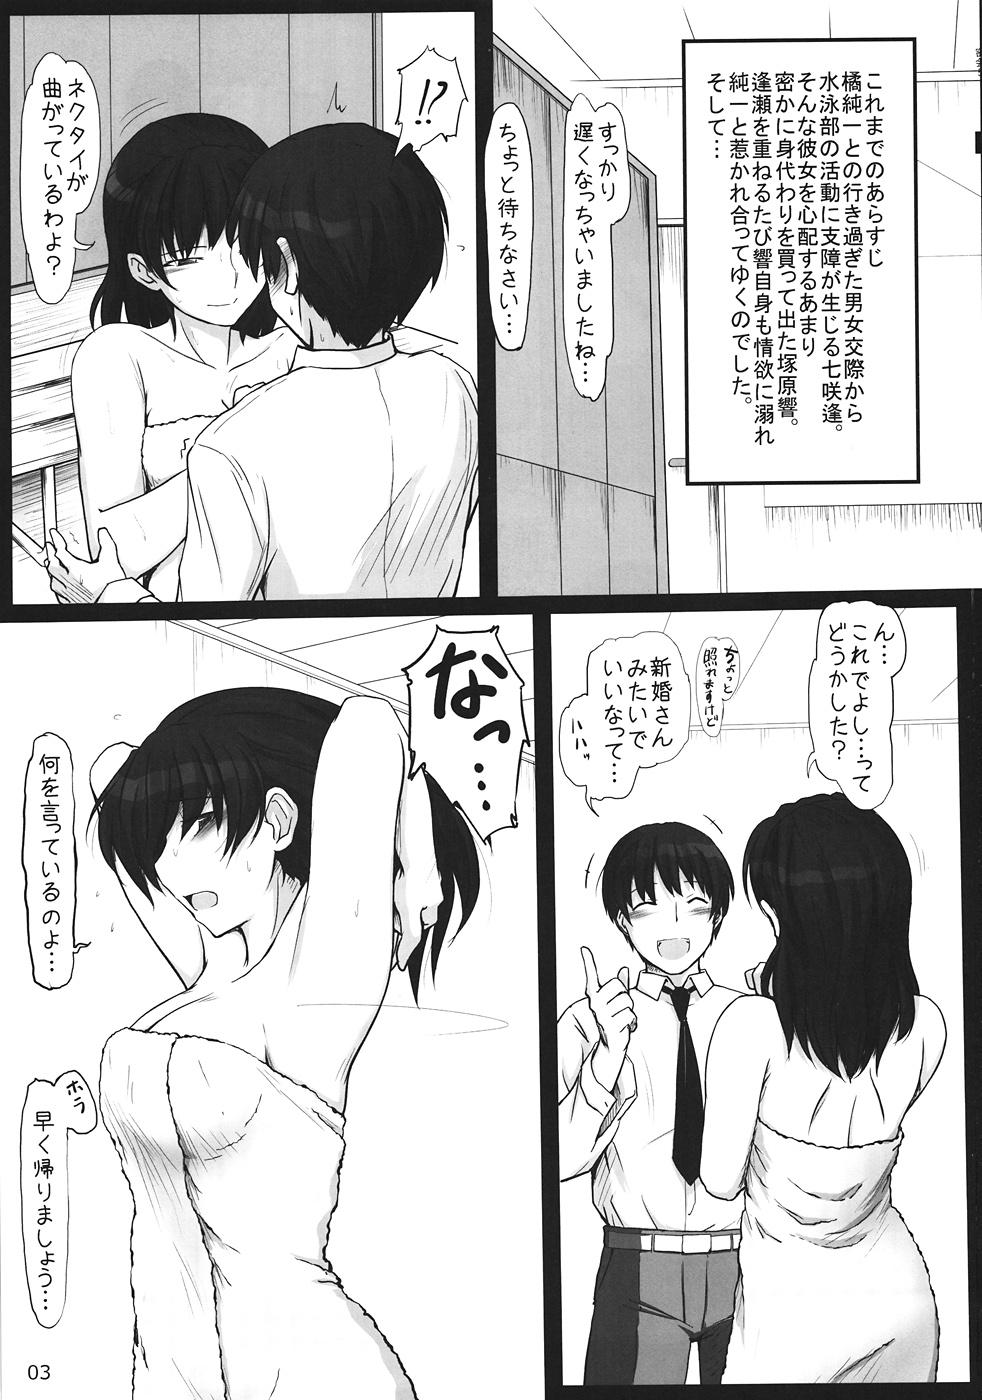 Thot Mikkai 5 - Amagami Street Fuck - Page 2